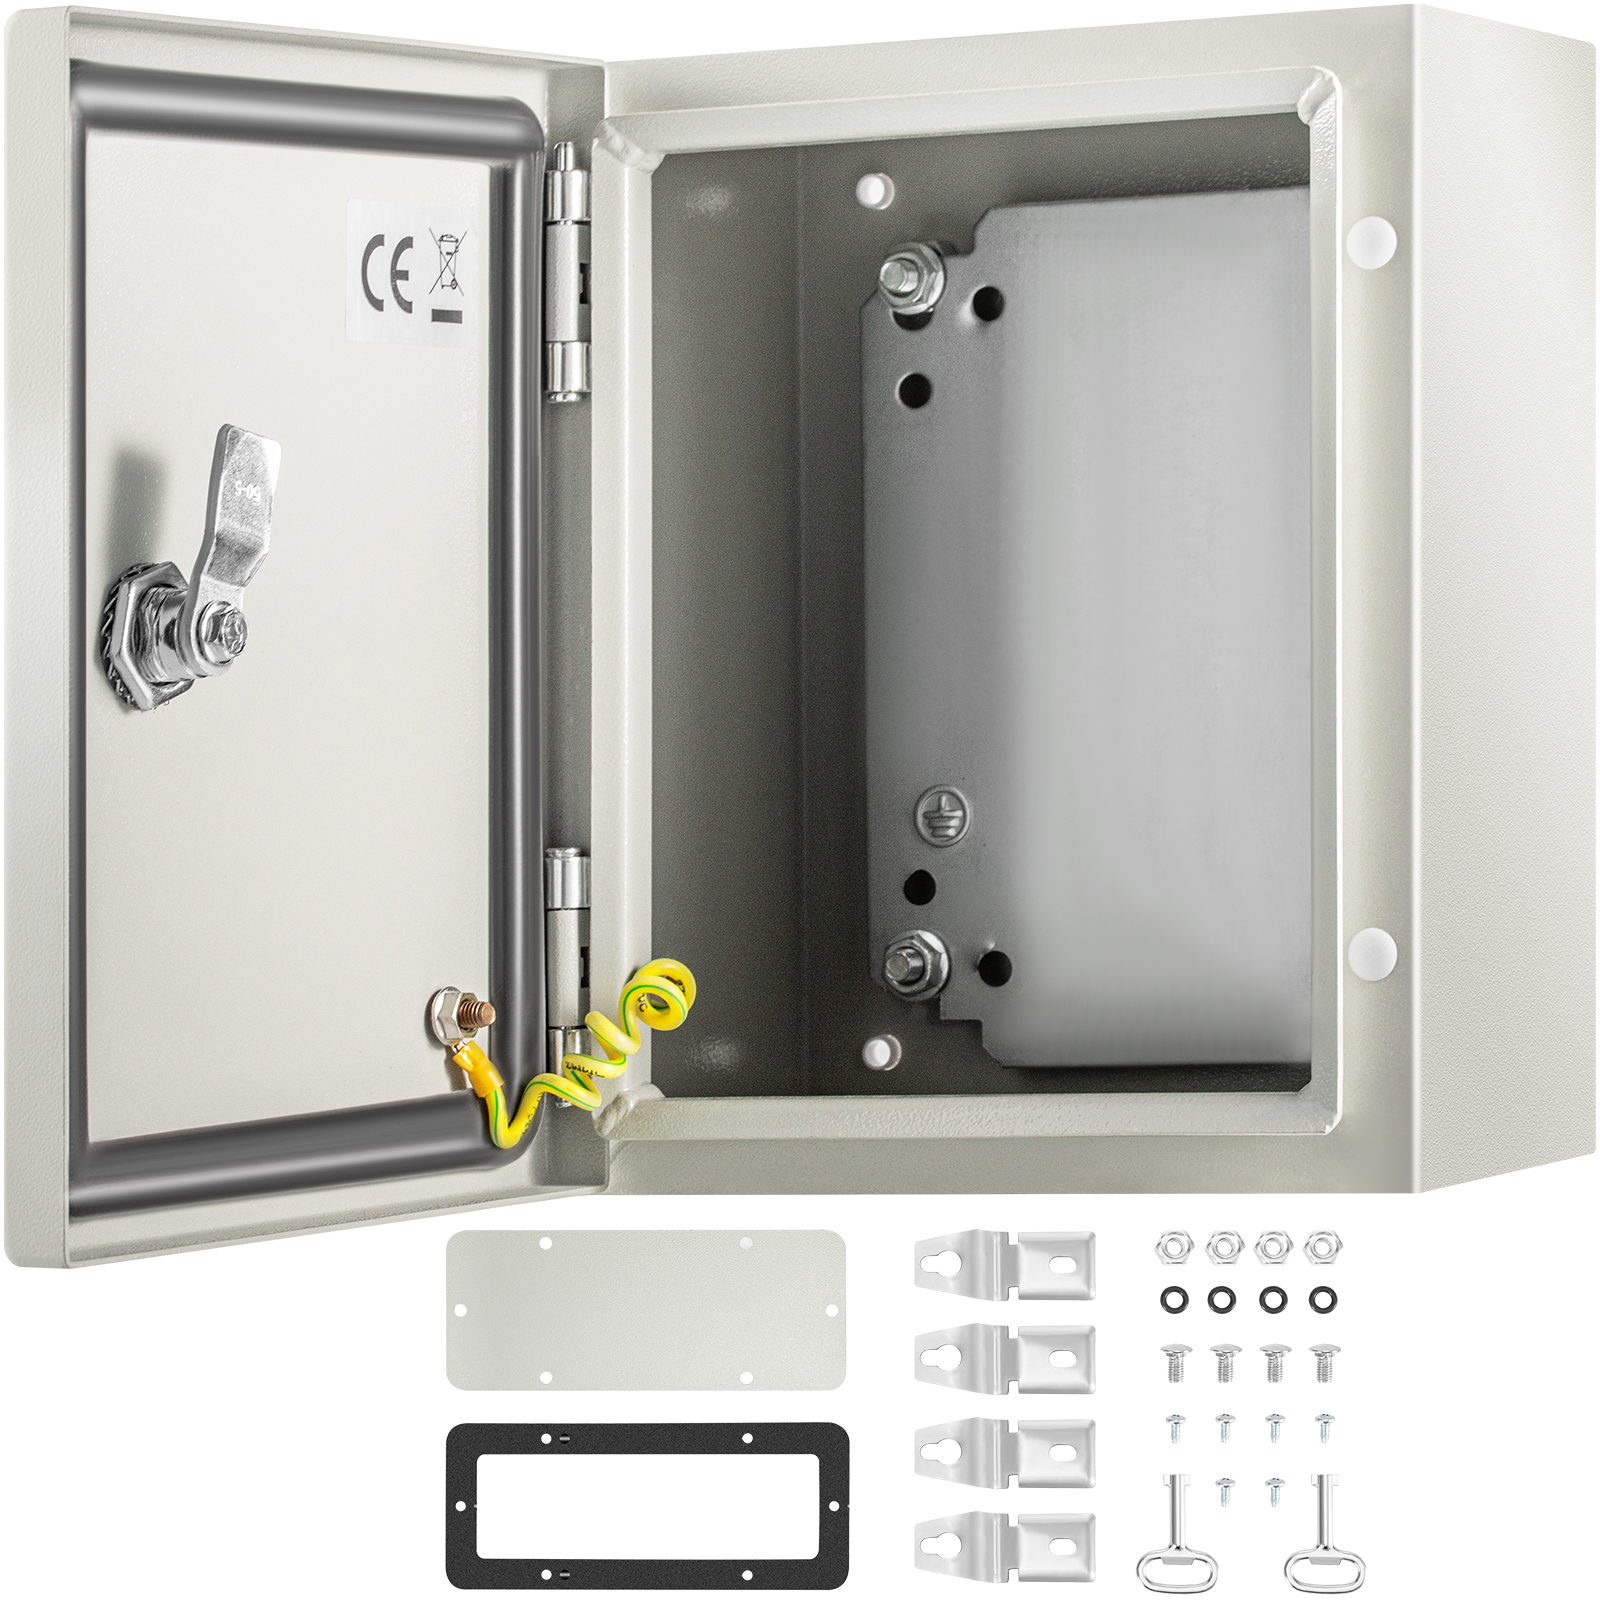 Ip66 Waterproof Junction Box Enclosure Case For Indoor And Outdoor